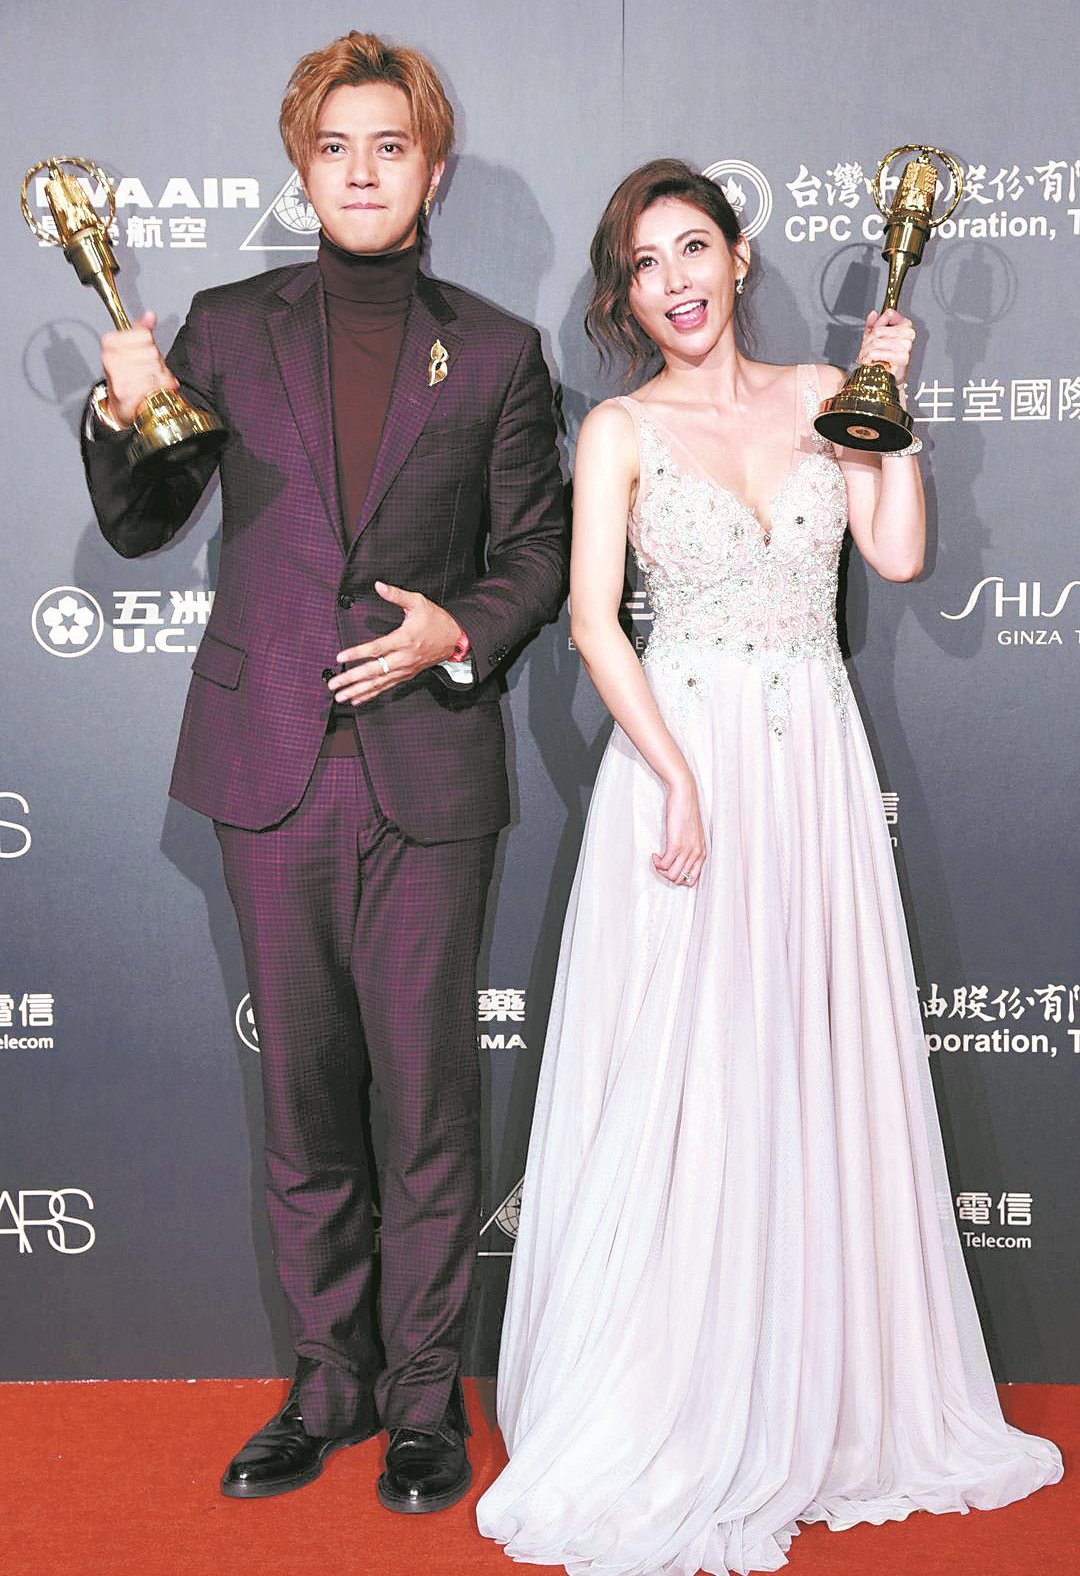 罗志祥与愷乐以《娱乐百分百》荣获《第52届电视金钟奖颁奖典礼》综艺节目主持人奖。